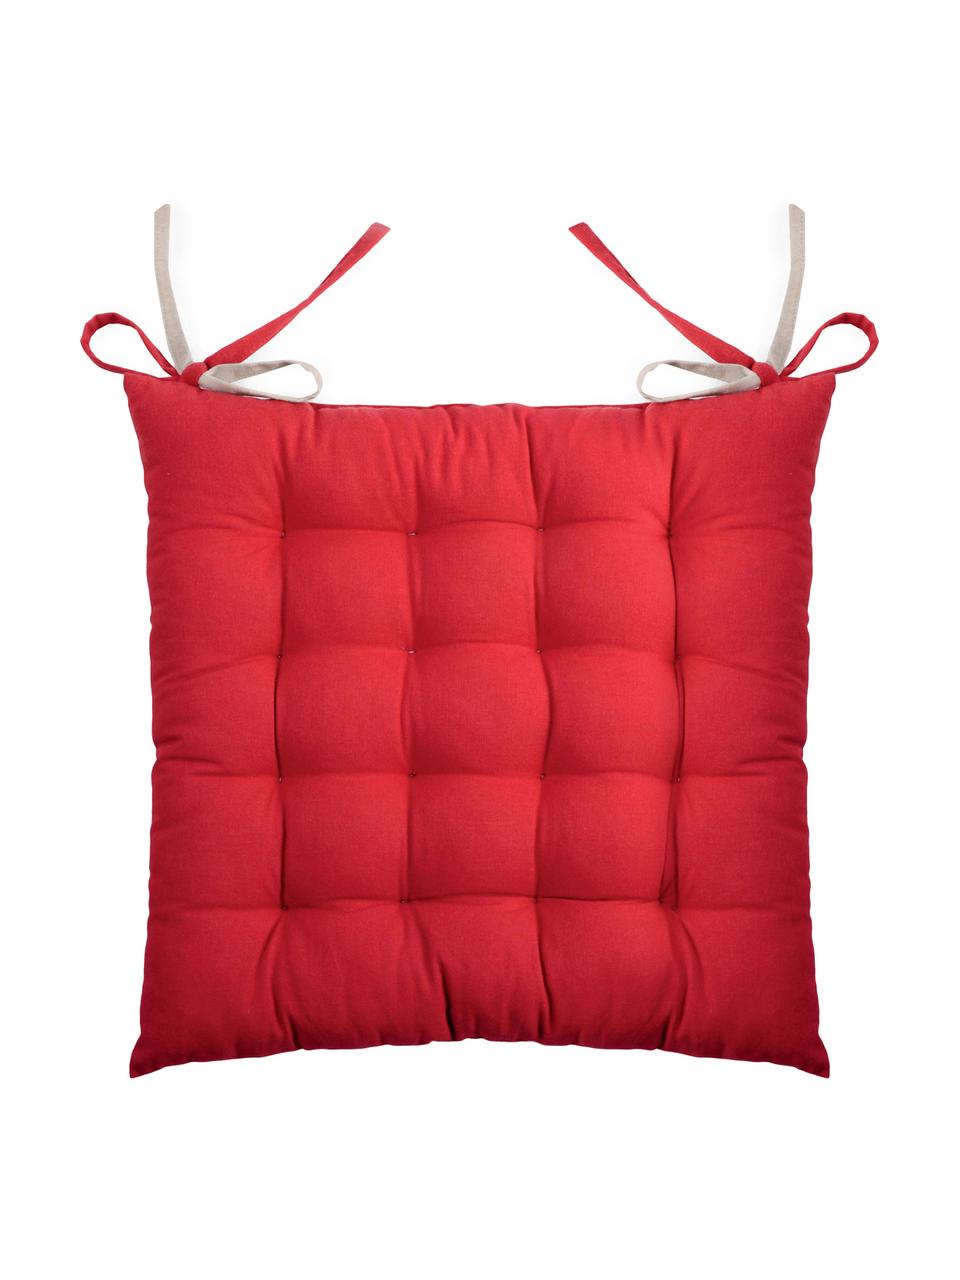 Cuscino sedia reversibile rosso/beige Duo 2 pz, Rosso, beige, Larg. 35 x Lung. 35 cm